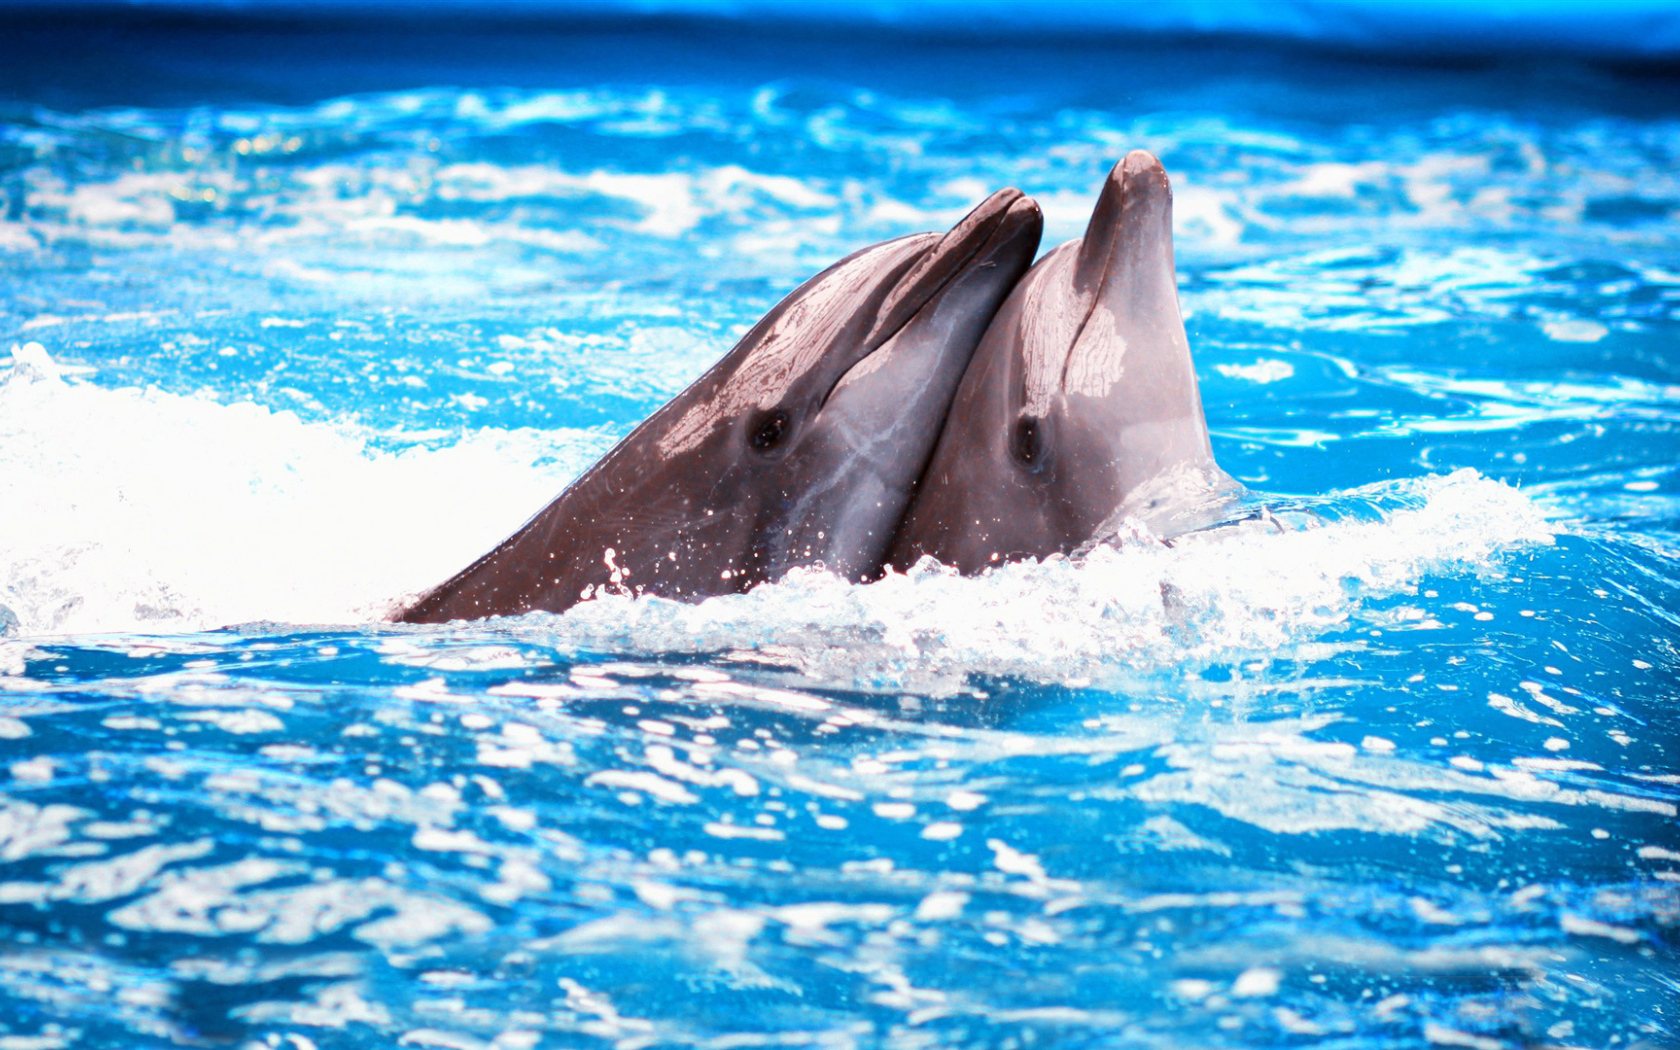 Пара дельфинов в голубой воде